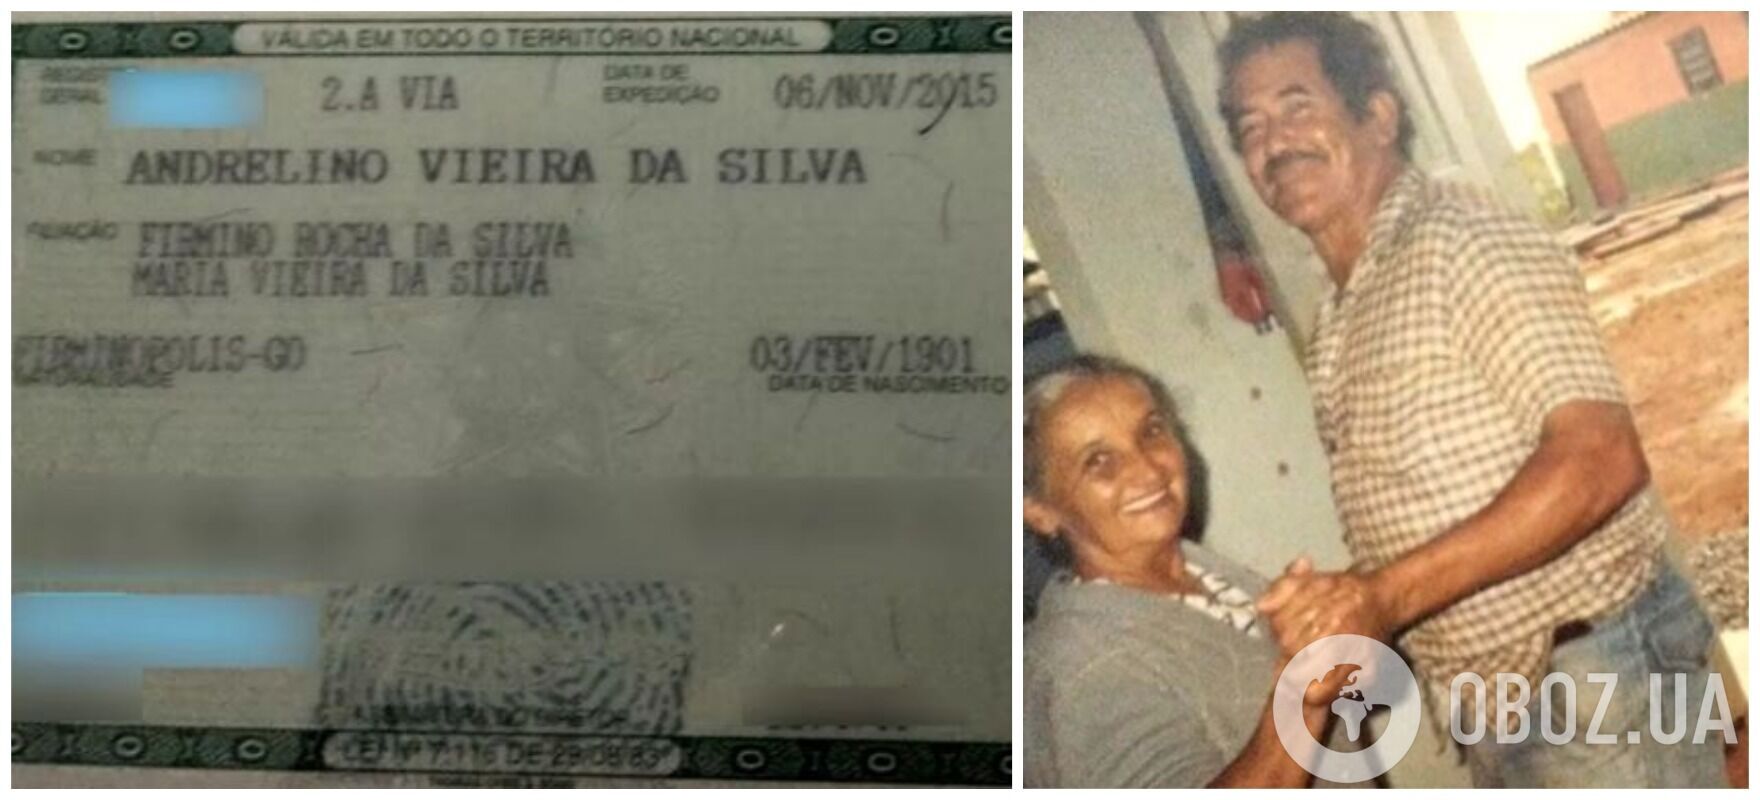 Удостоверение личности и Андрелино Виейра да Силва в молодости вместе с женой